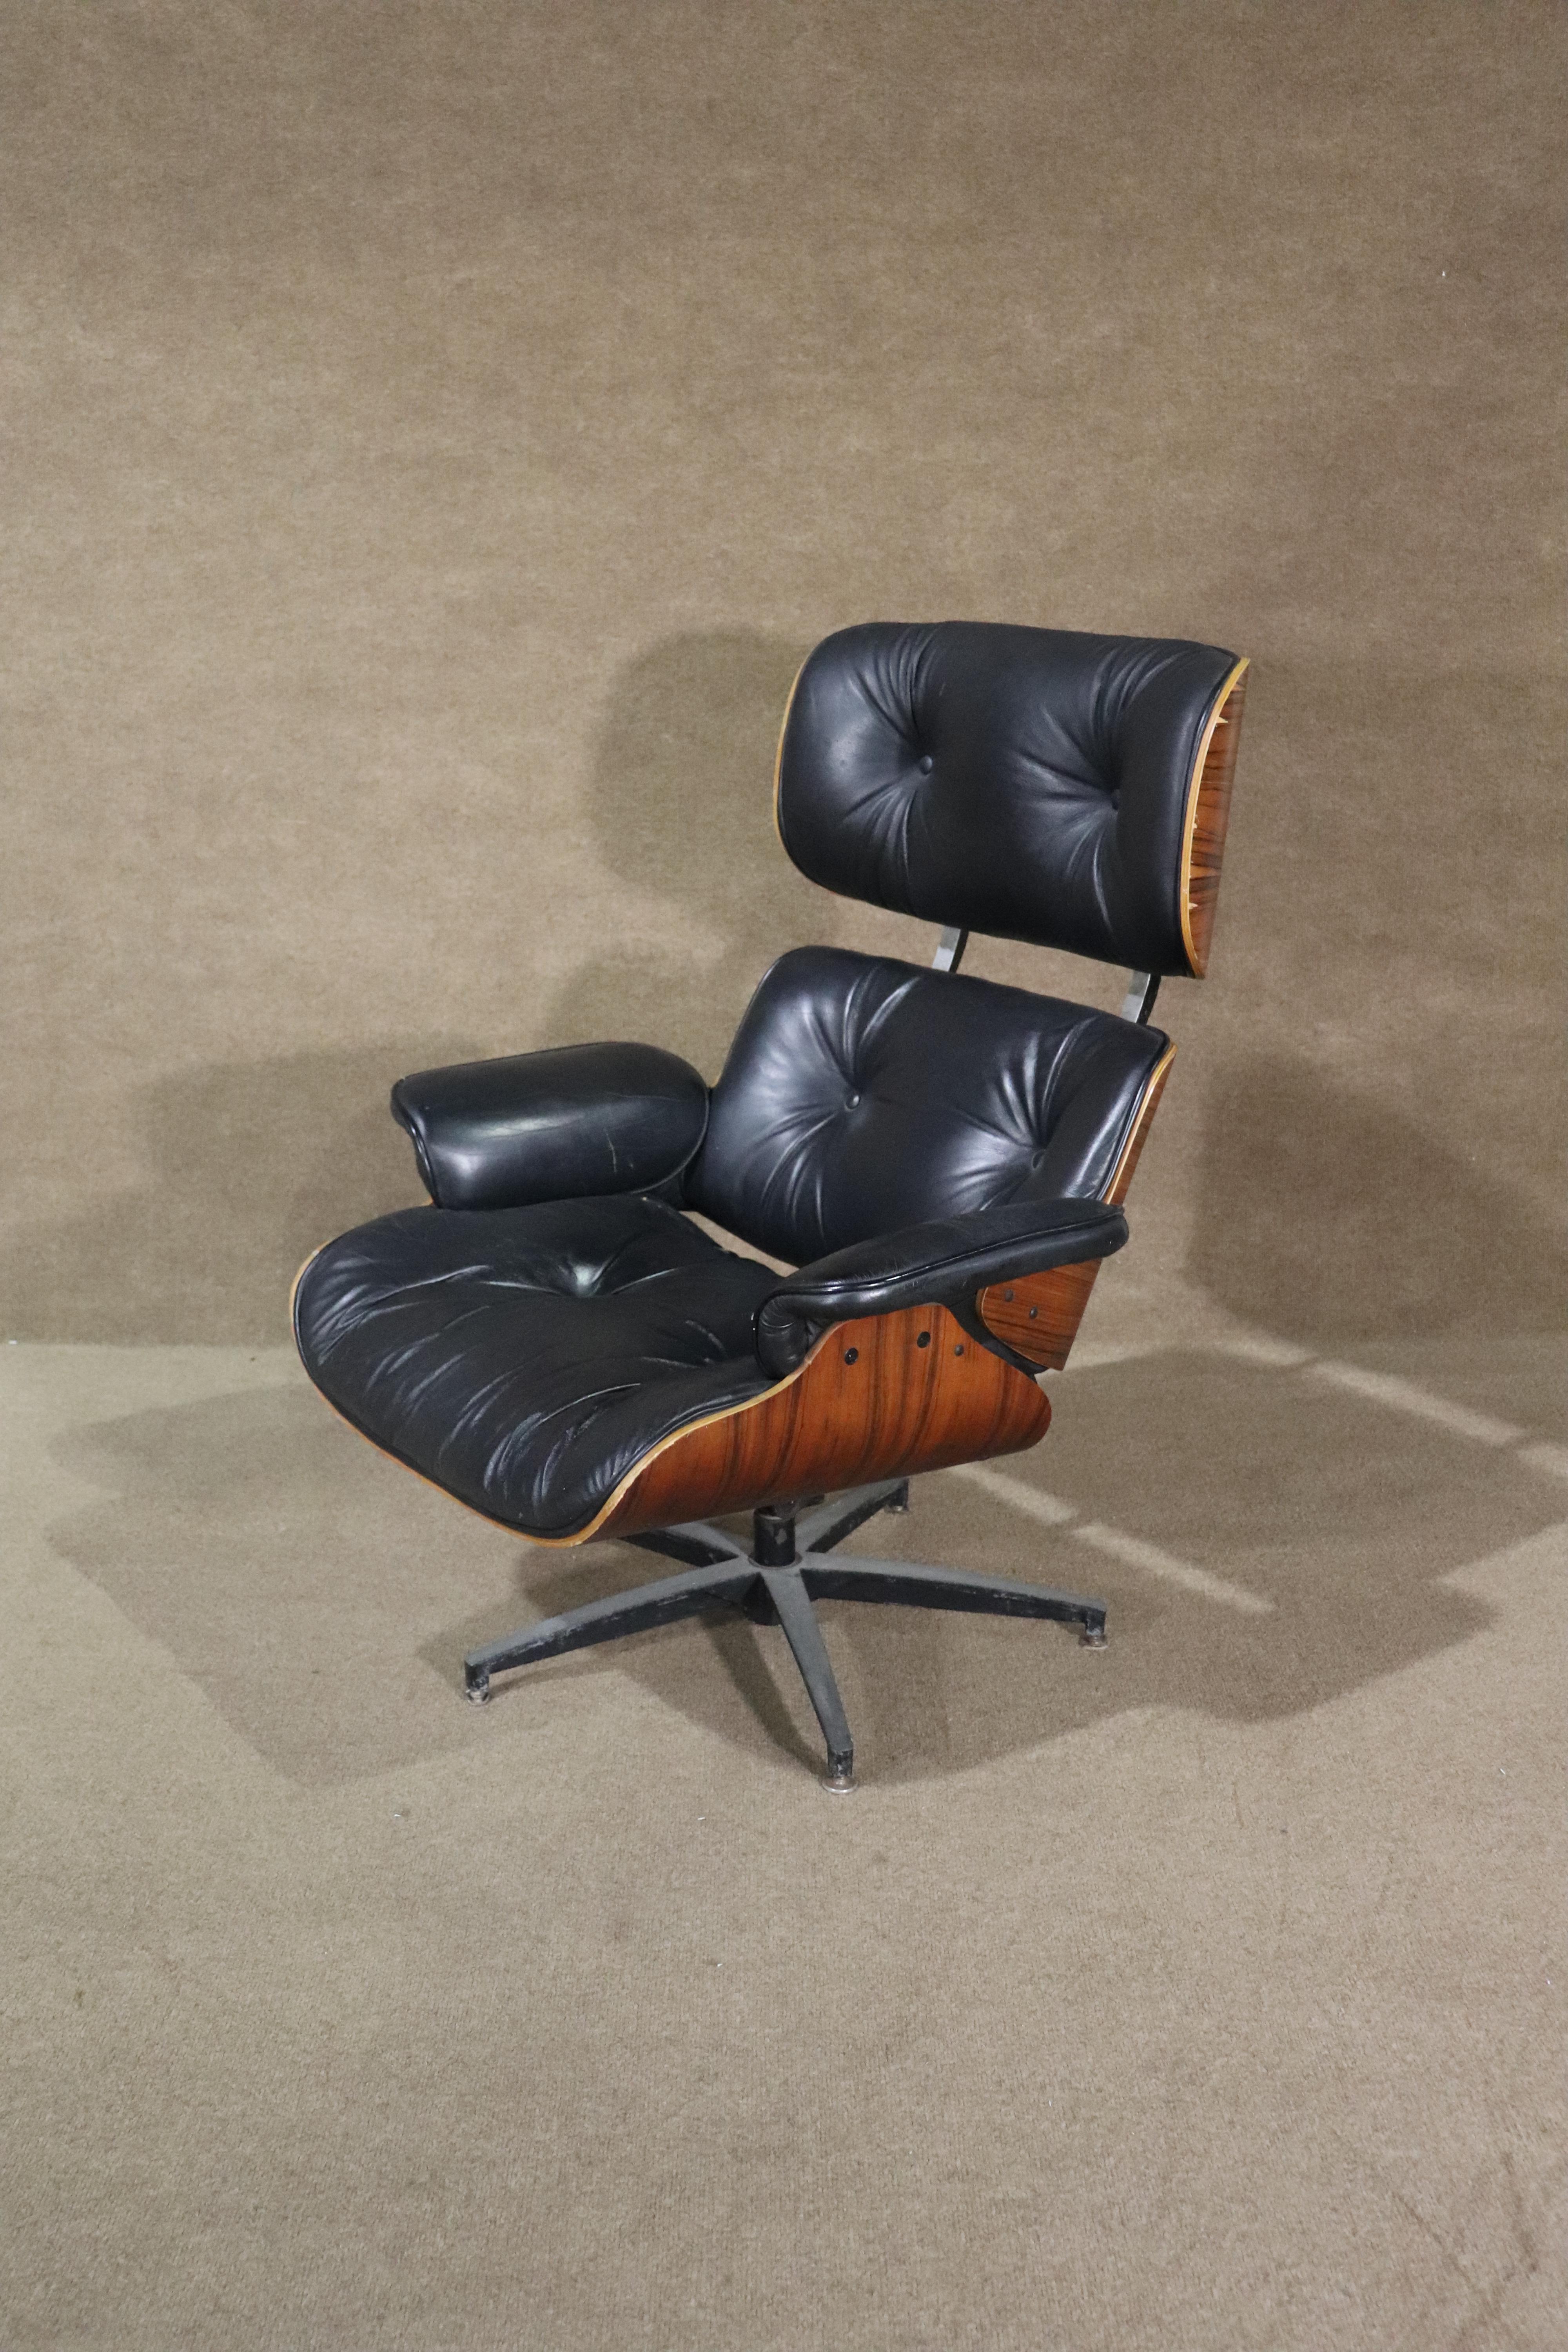 Cette chaise longue de style Eames a toutes les bonnes lignes ! Magnifique cadre en bois de rose courbé avec cuir noir tufté. Prêt pour votre maison ou votre bureau.
Veuillez confirmer le lieu NY ou NJ